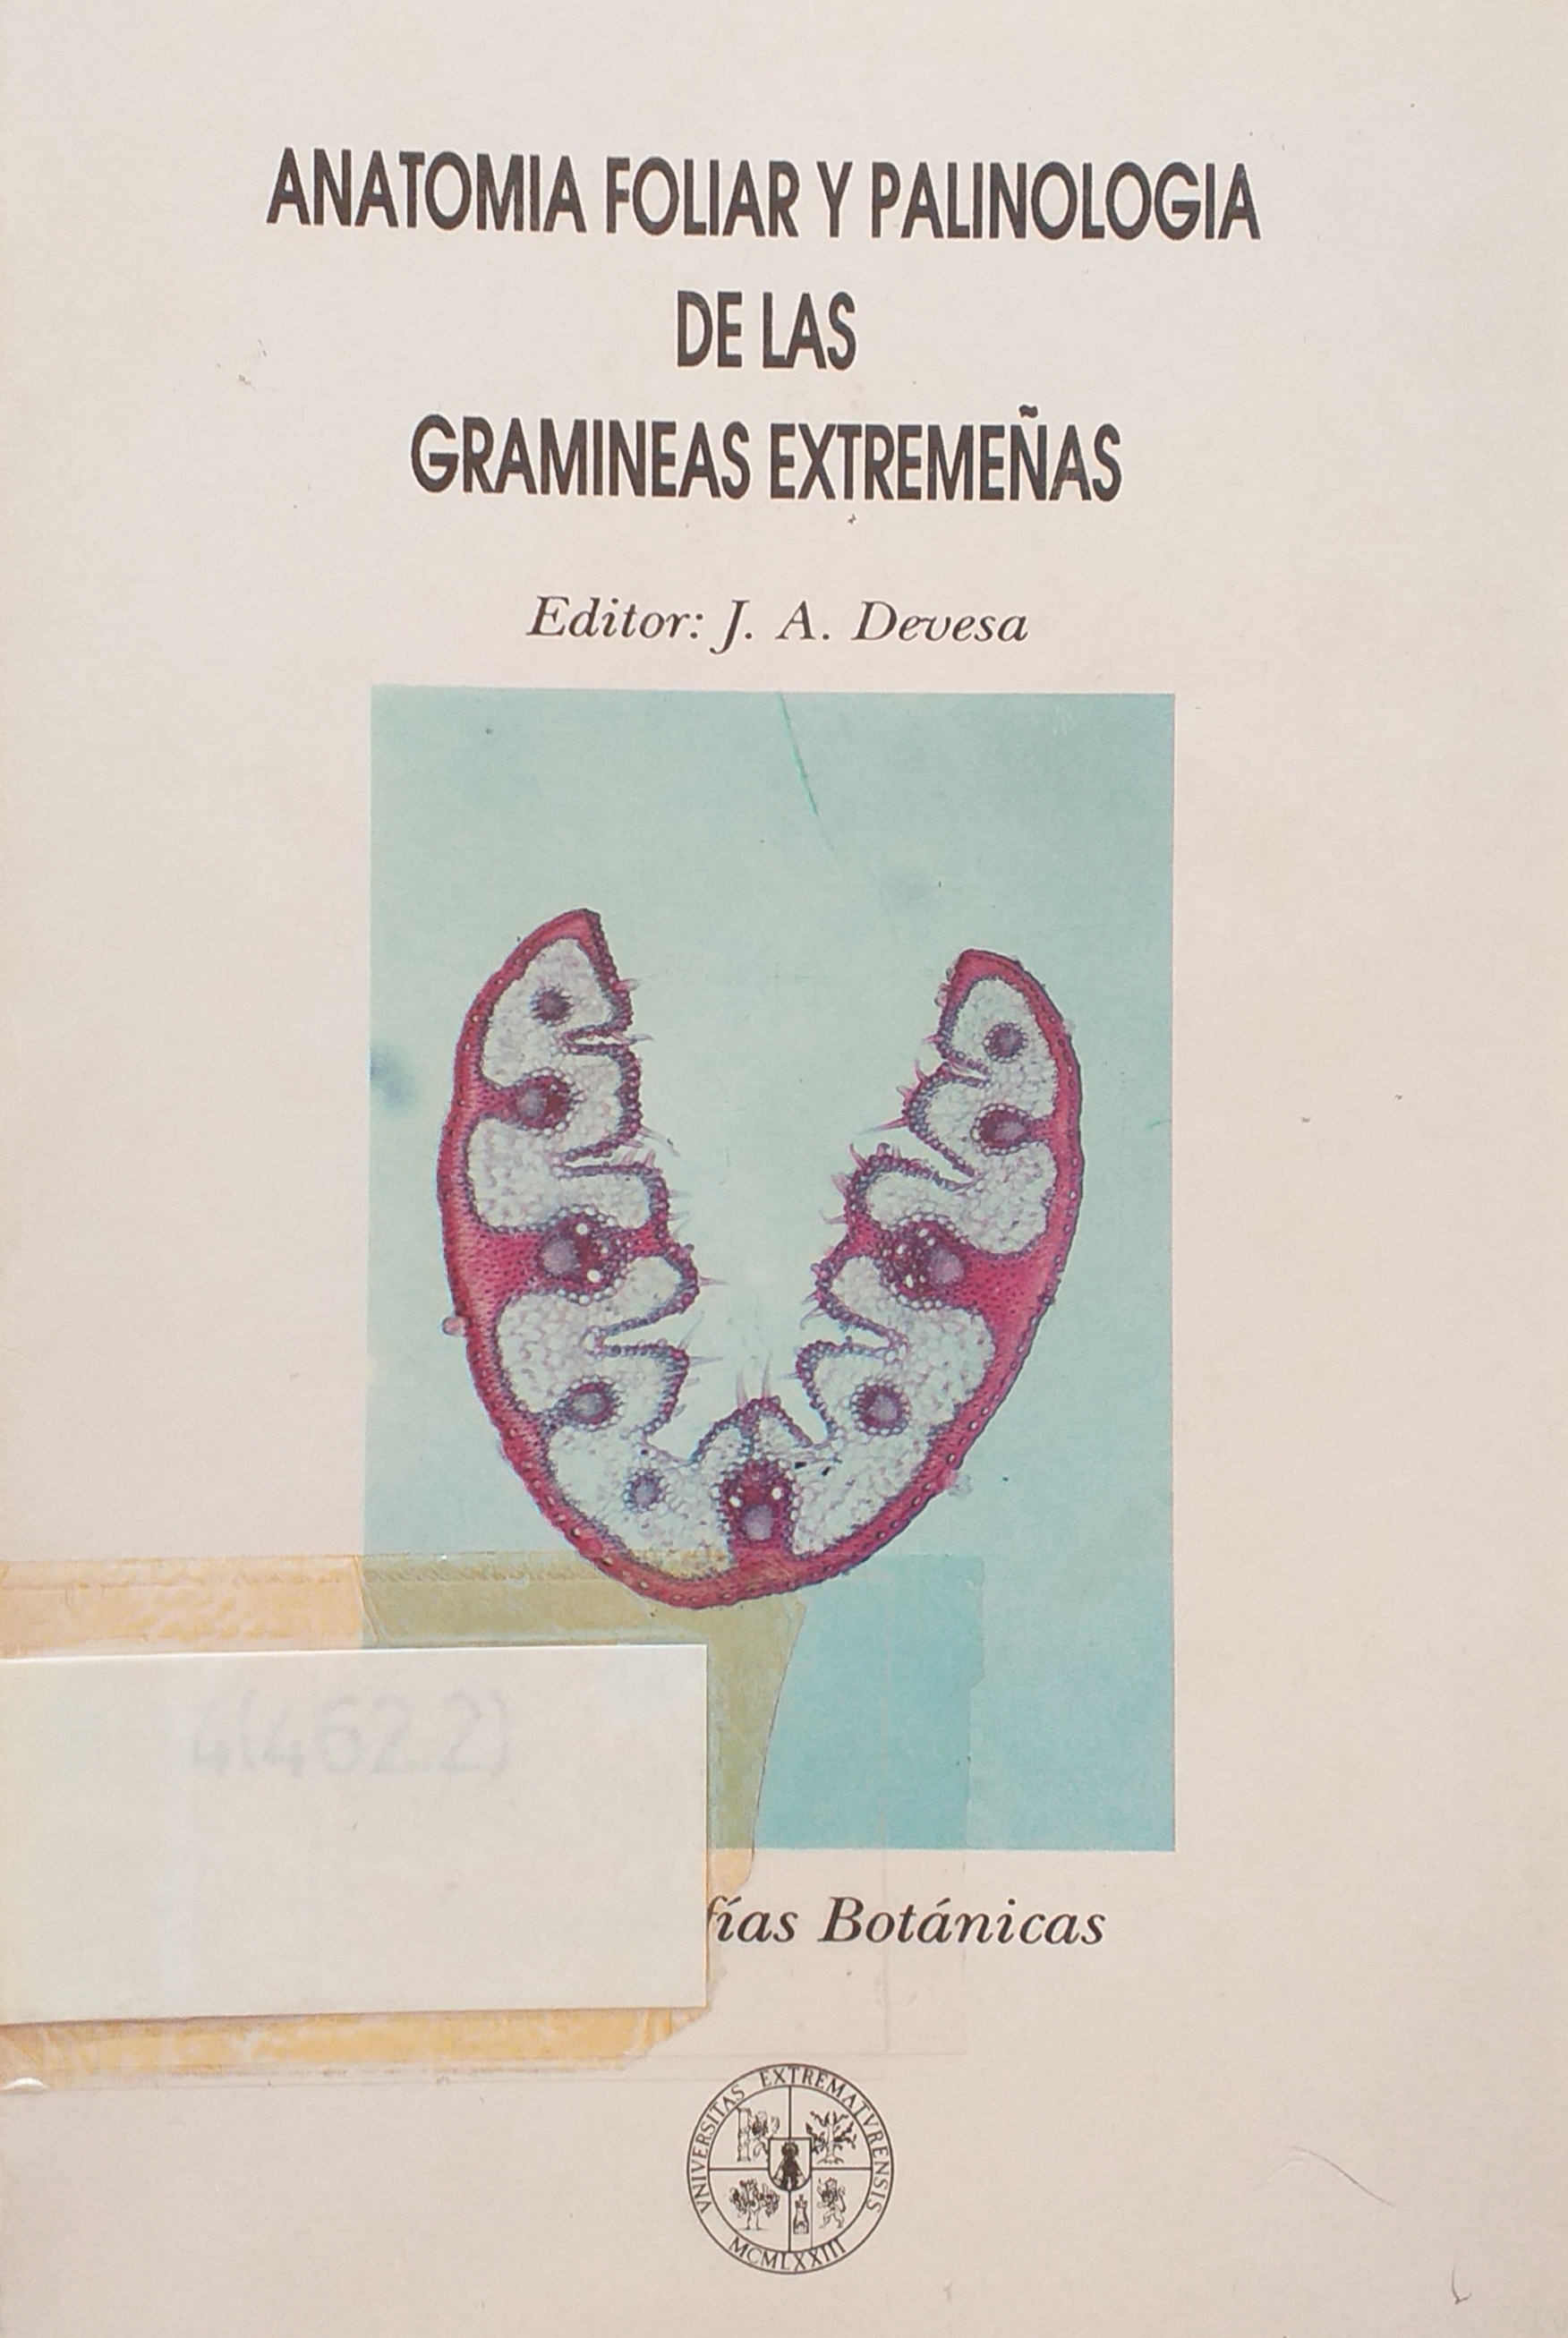 Imagen de portada del libro Anatomía foliar y palinología de las gramíneas extremeñas